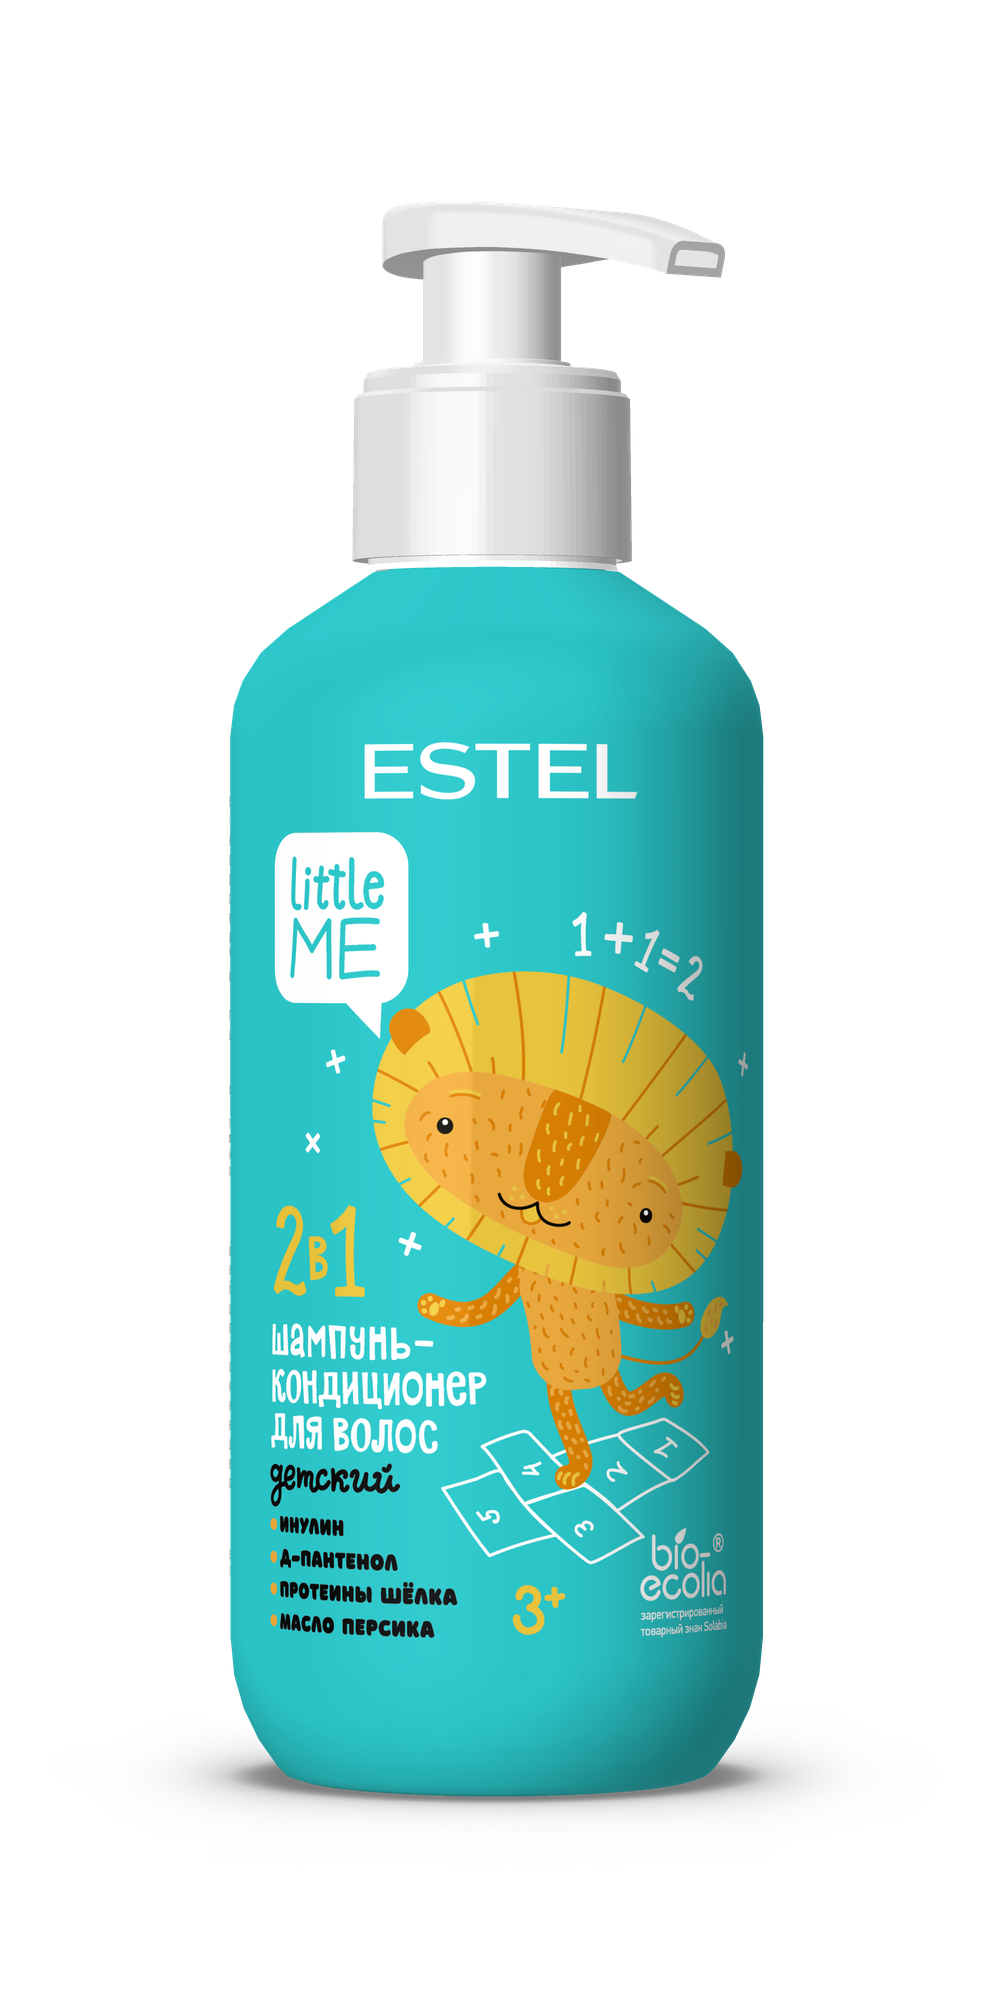 ESTEL Little Me Детский шампунь-кондиционер для волос 2 в 1, 300 мл